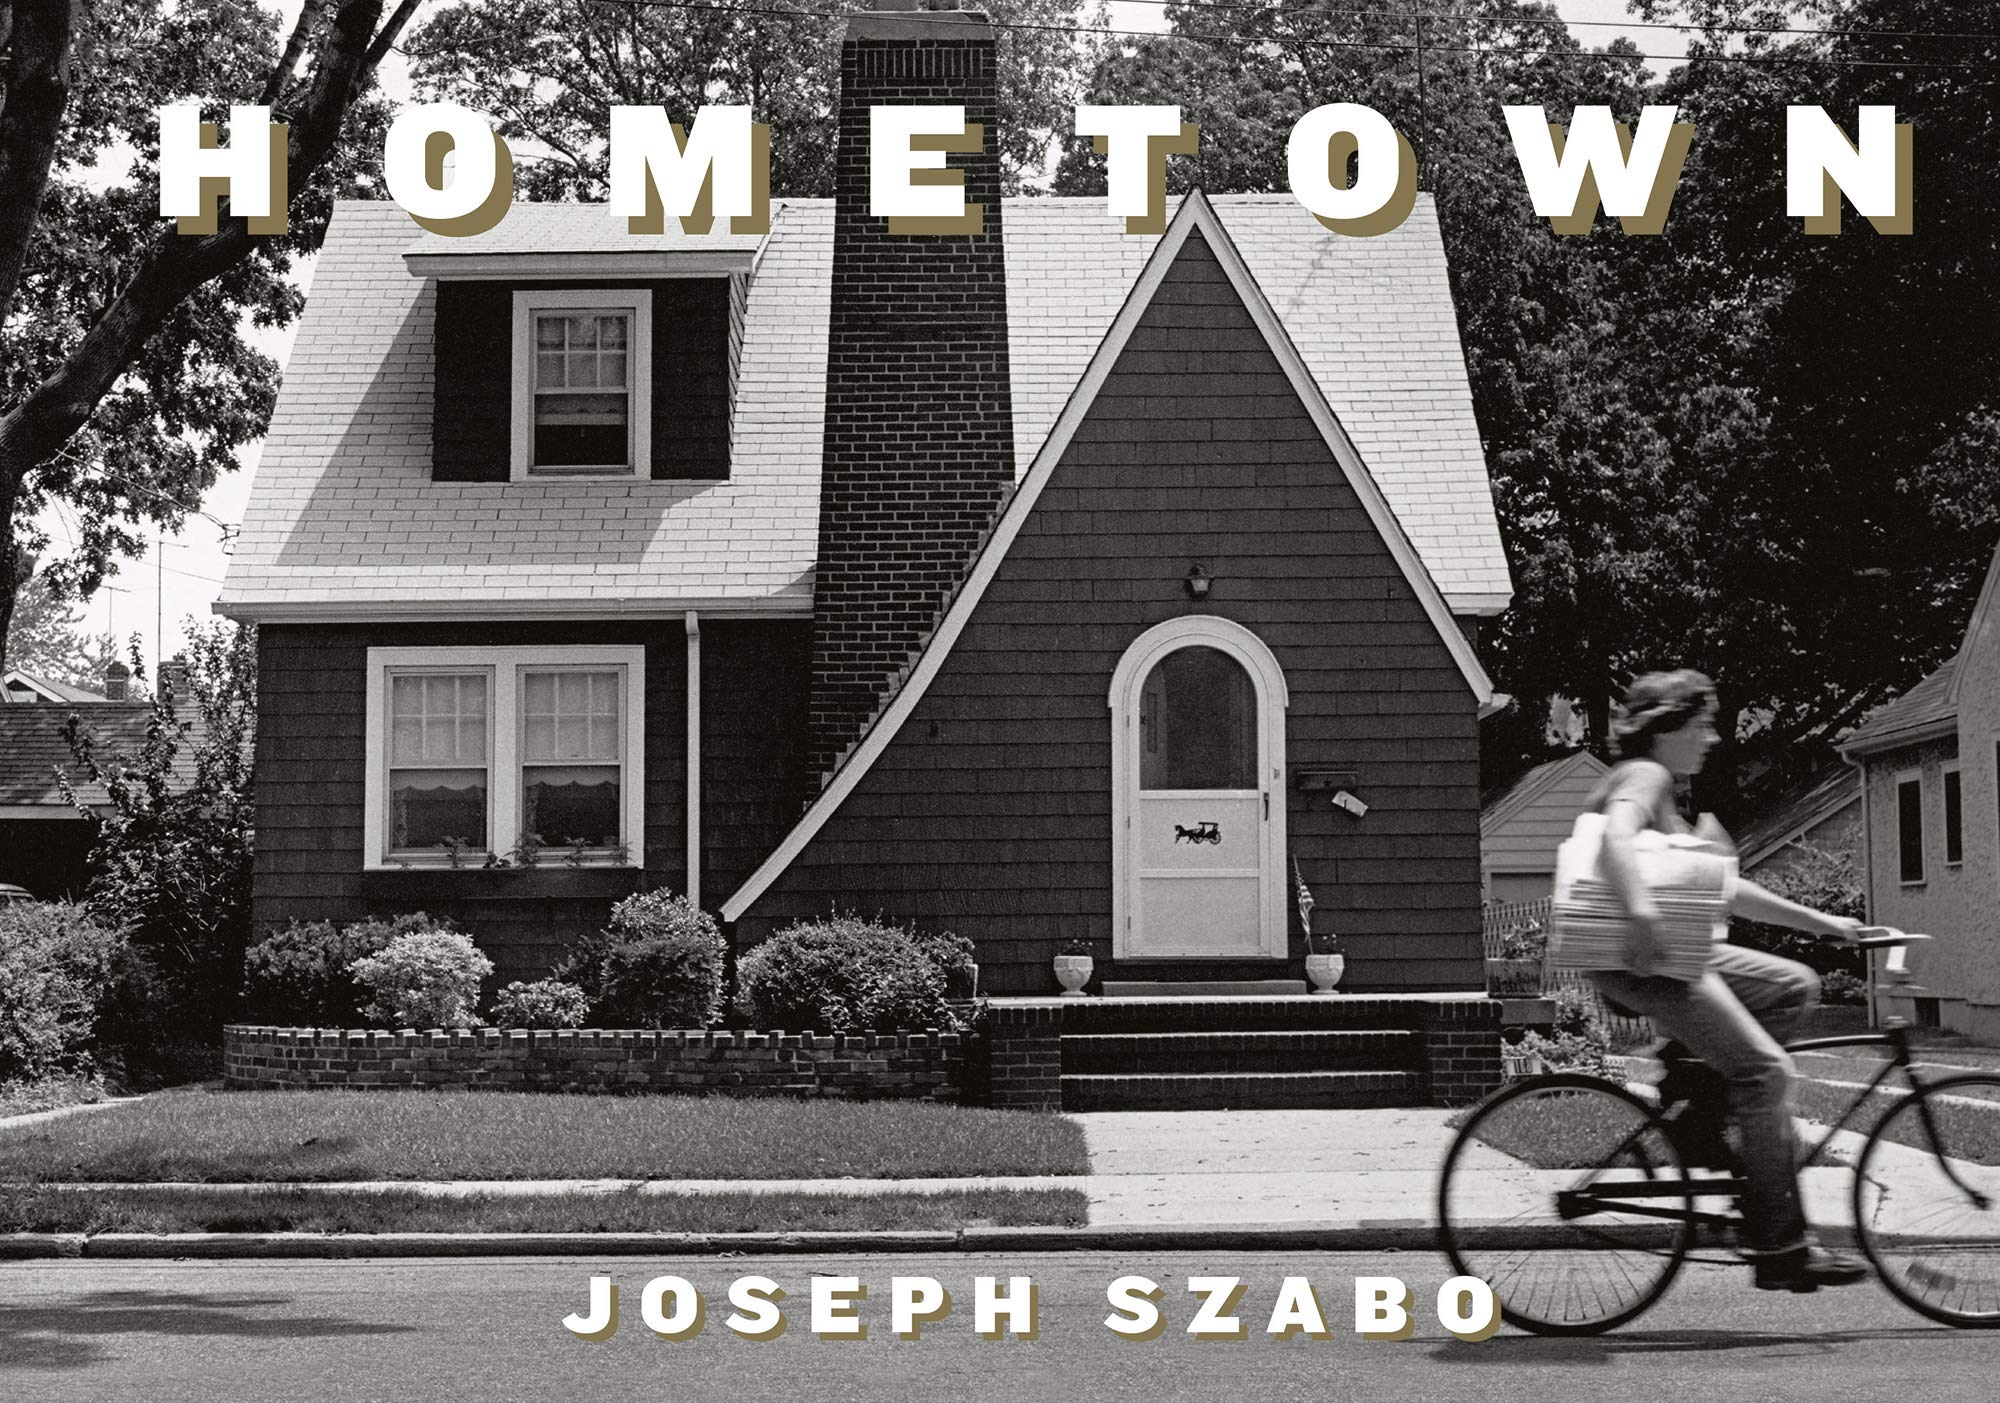 Joseph Szabo Hometown